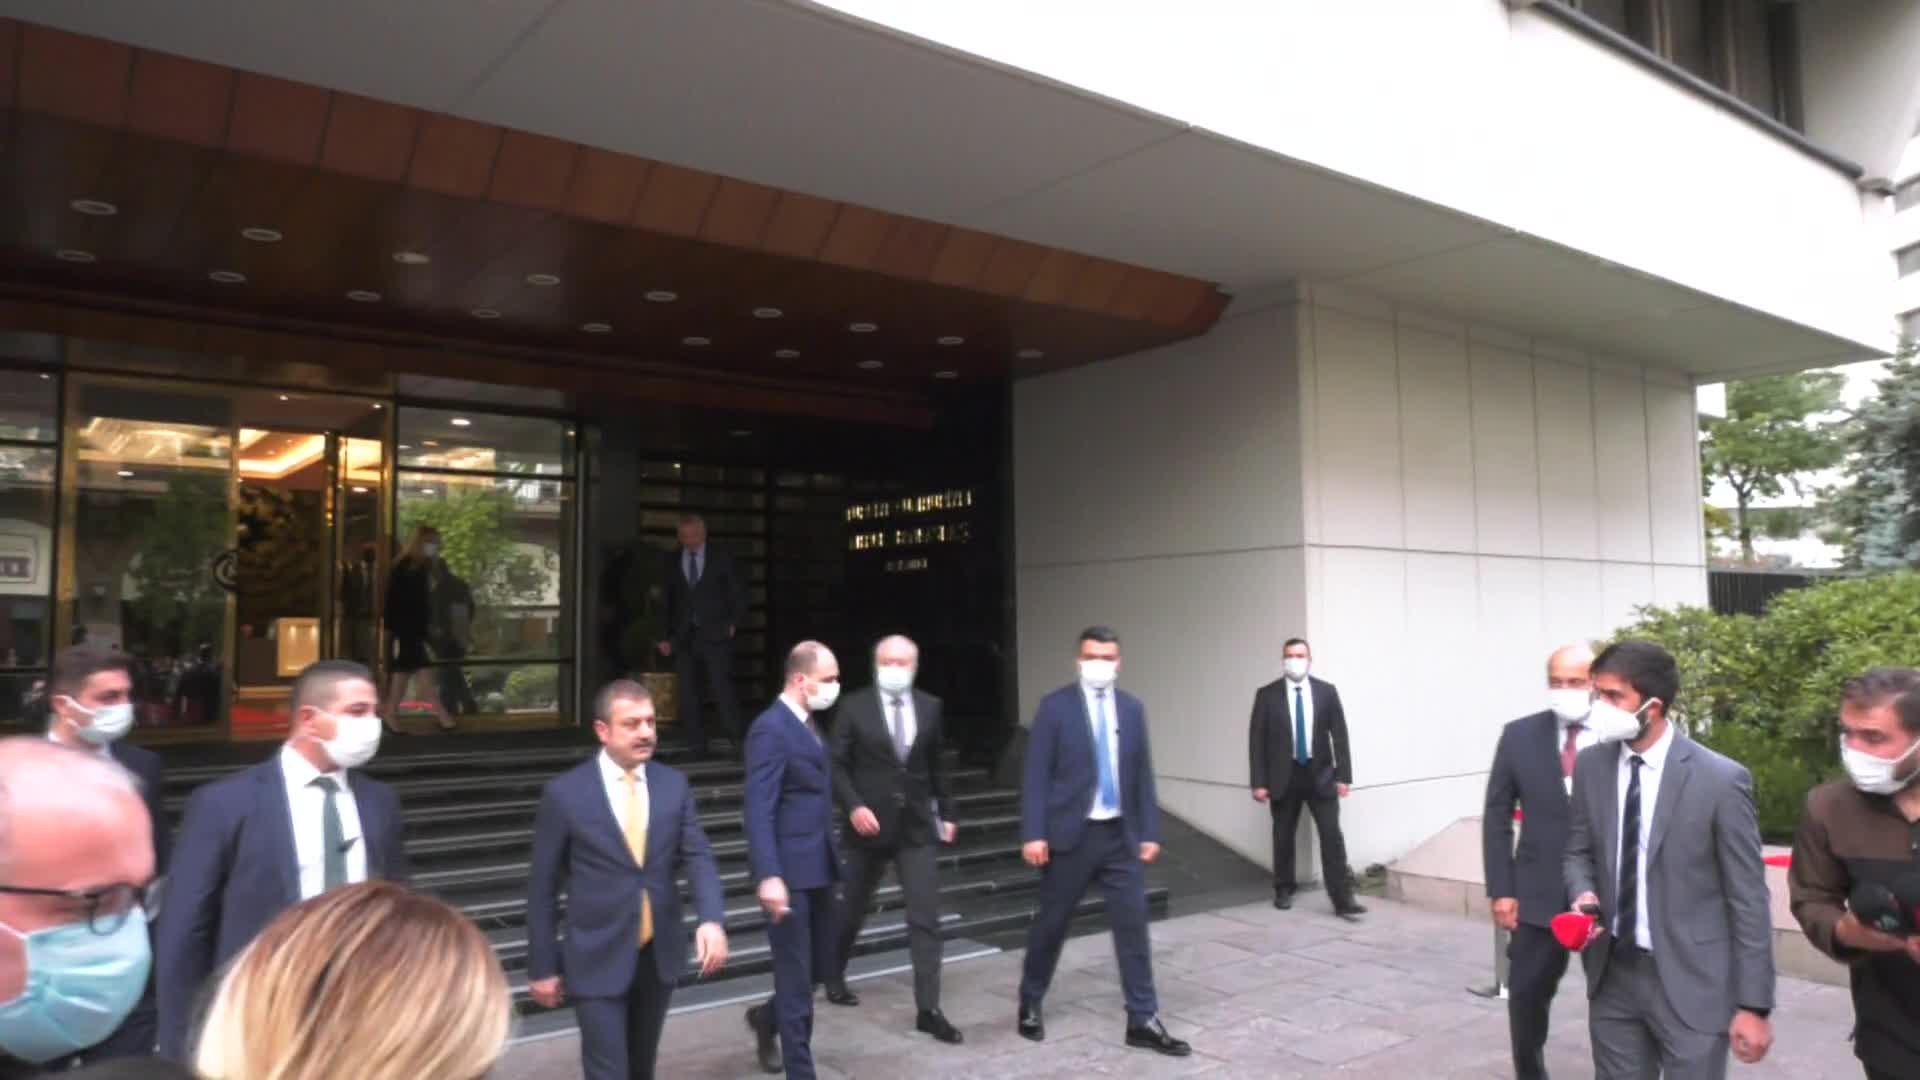 Kavcıoğlu, Merkez Bankası'ndaki görevden almalarla ilgili konuştu: "Bir kısmı arkadaşların kendi tercihi, bir kısmı bizim tercihimiz"